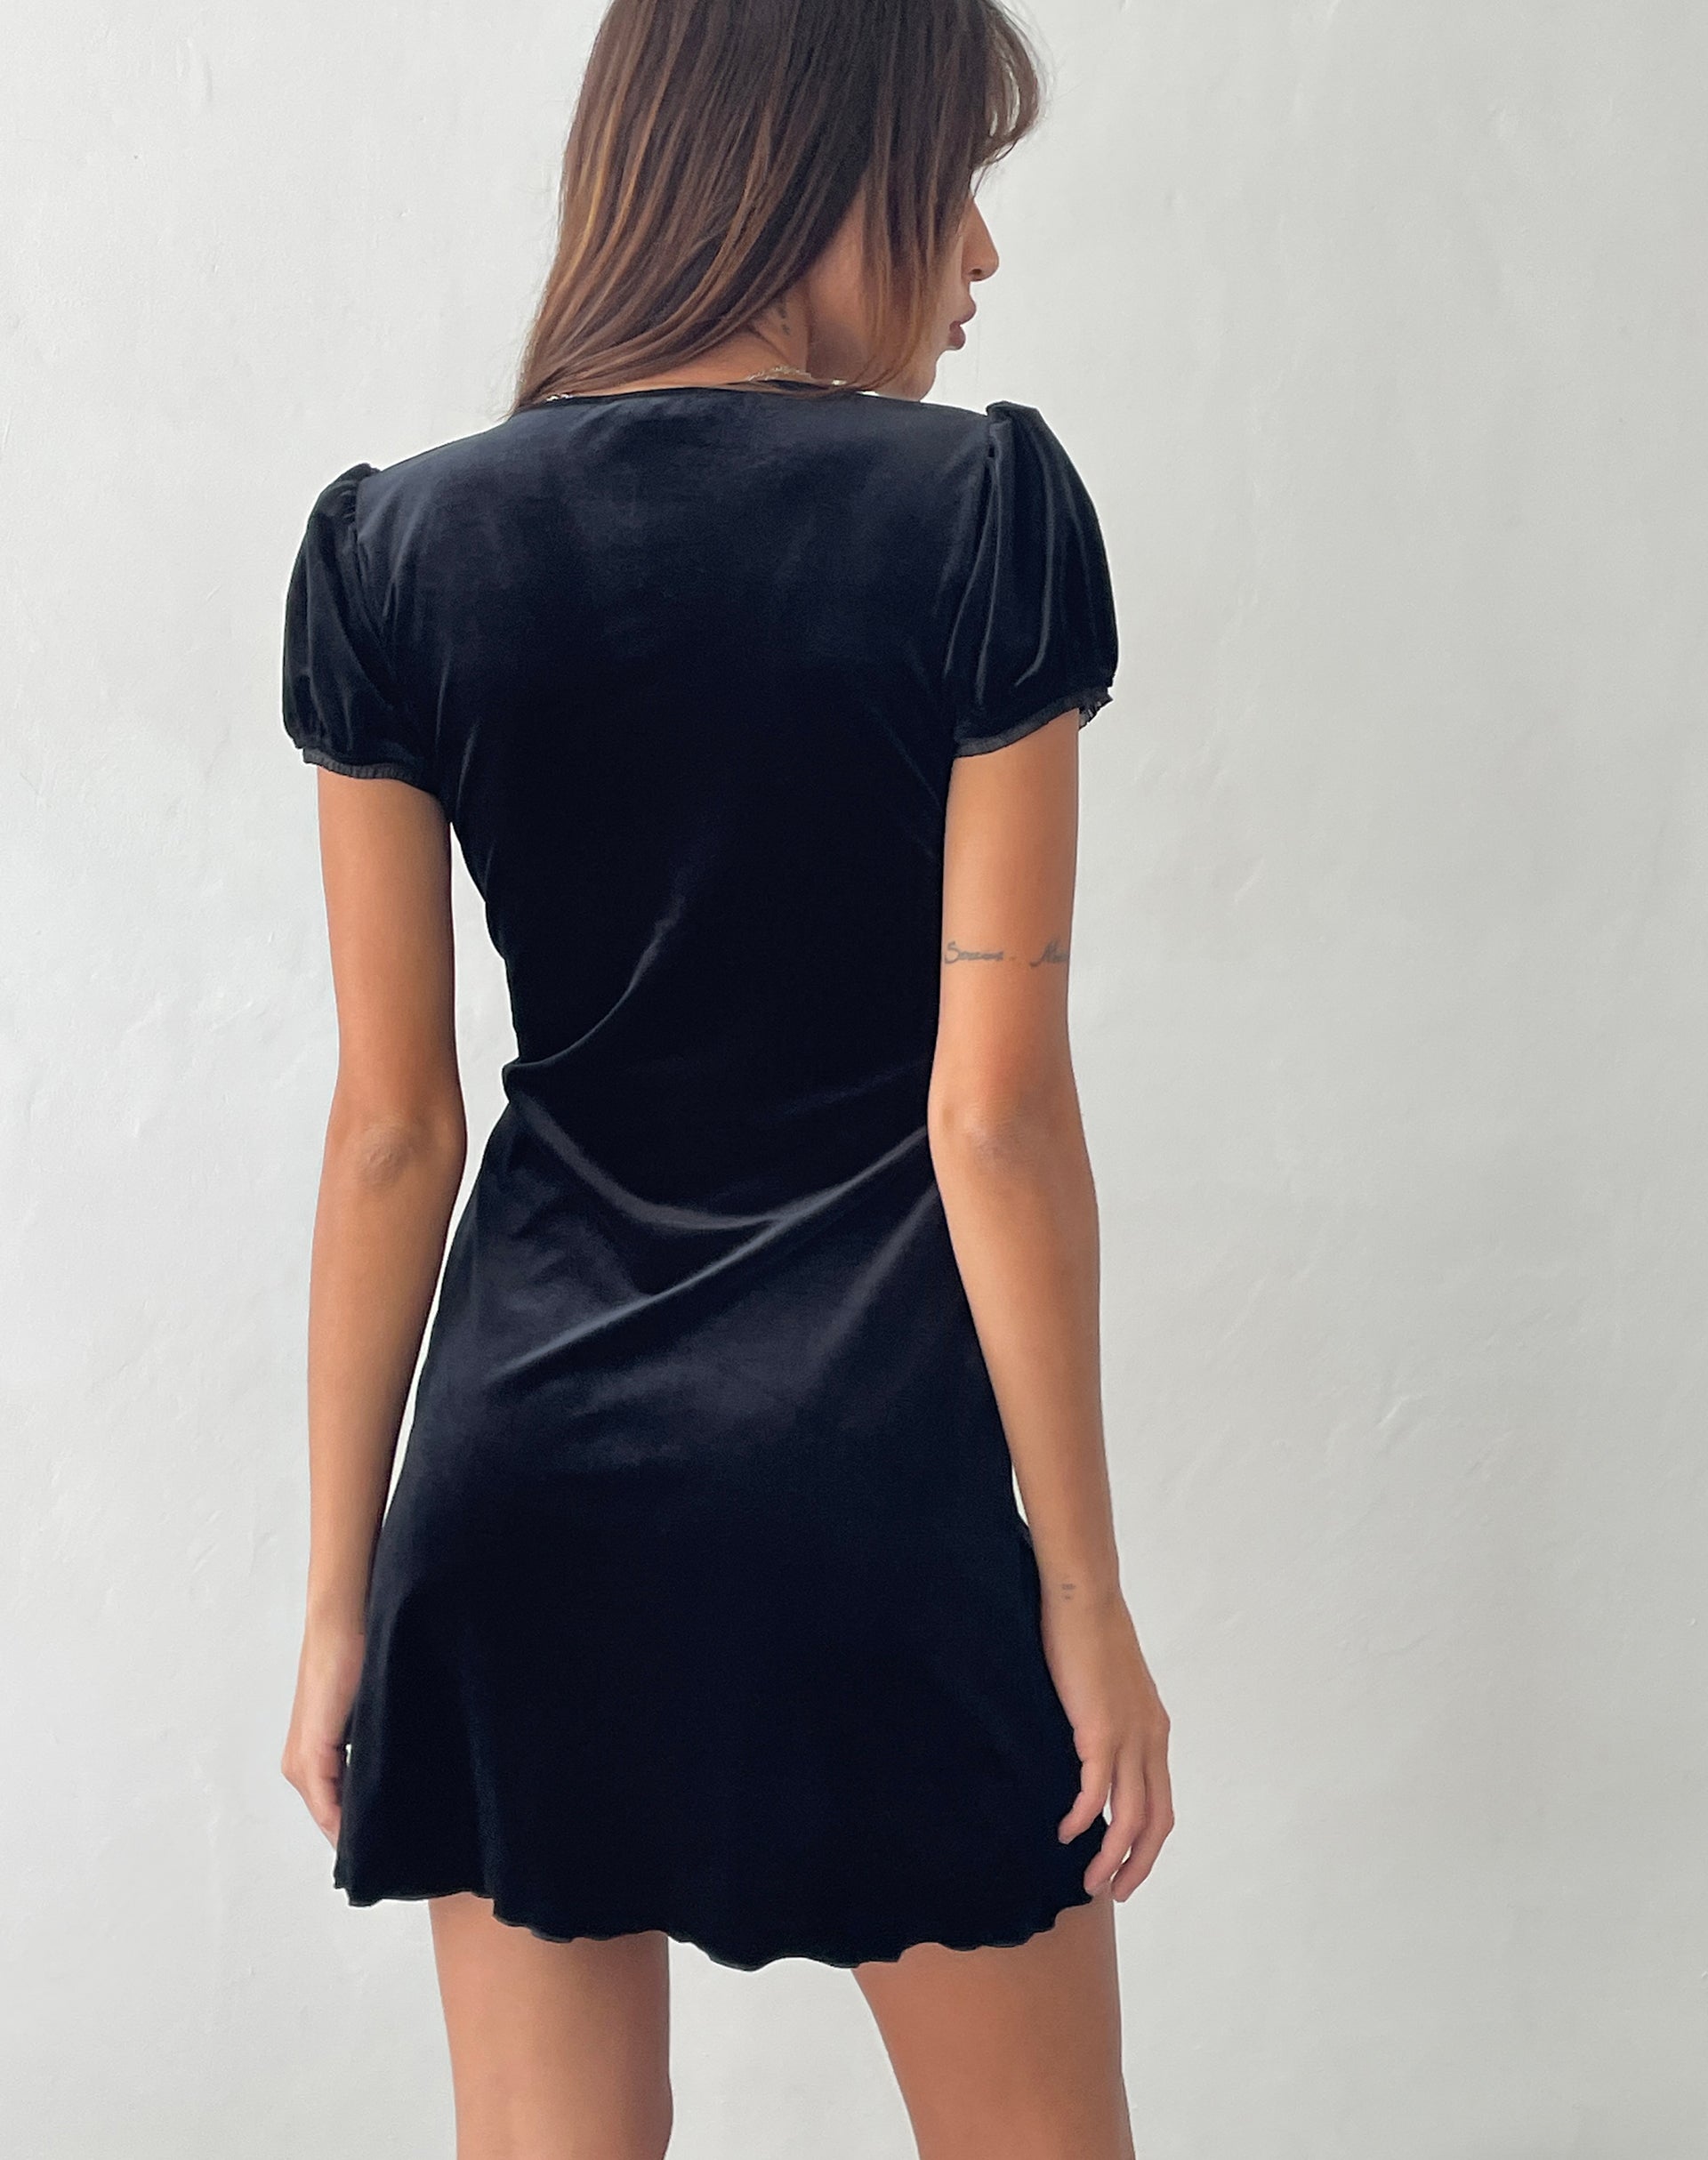 Image of Tabitha Mini Dress in Black Velvet